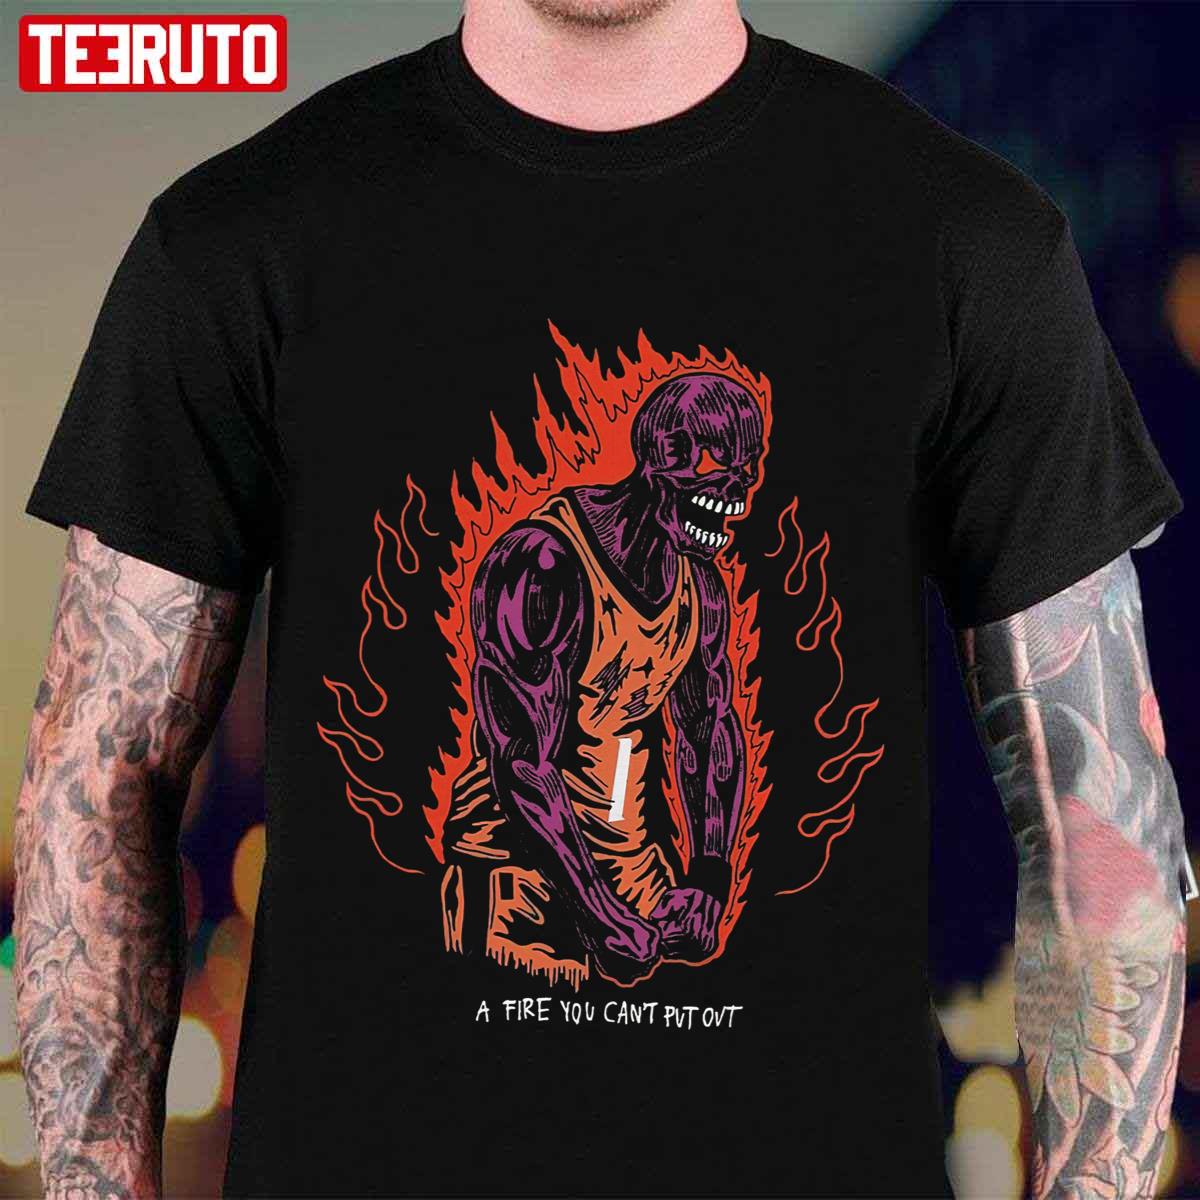 Phoenix Suns The Final Shot Warren Lotas 1st shirt, hoodie